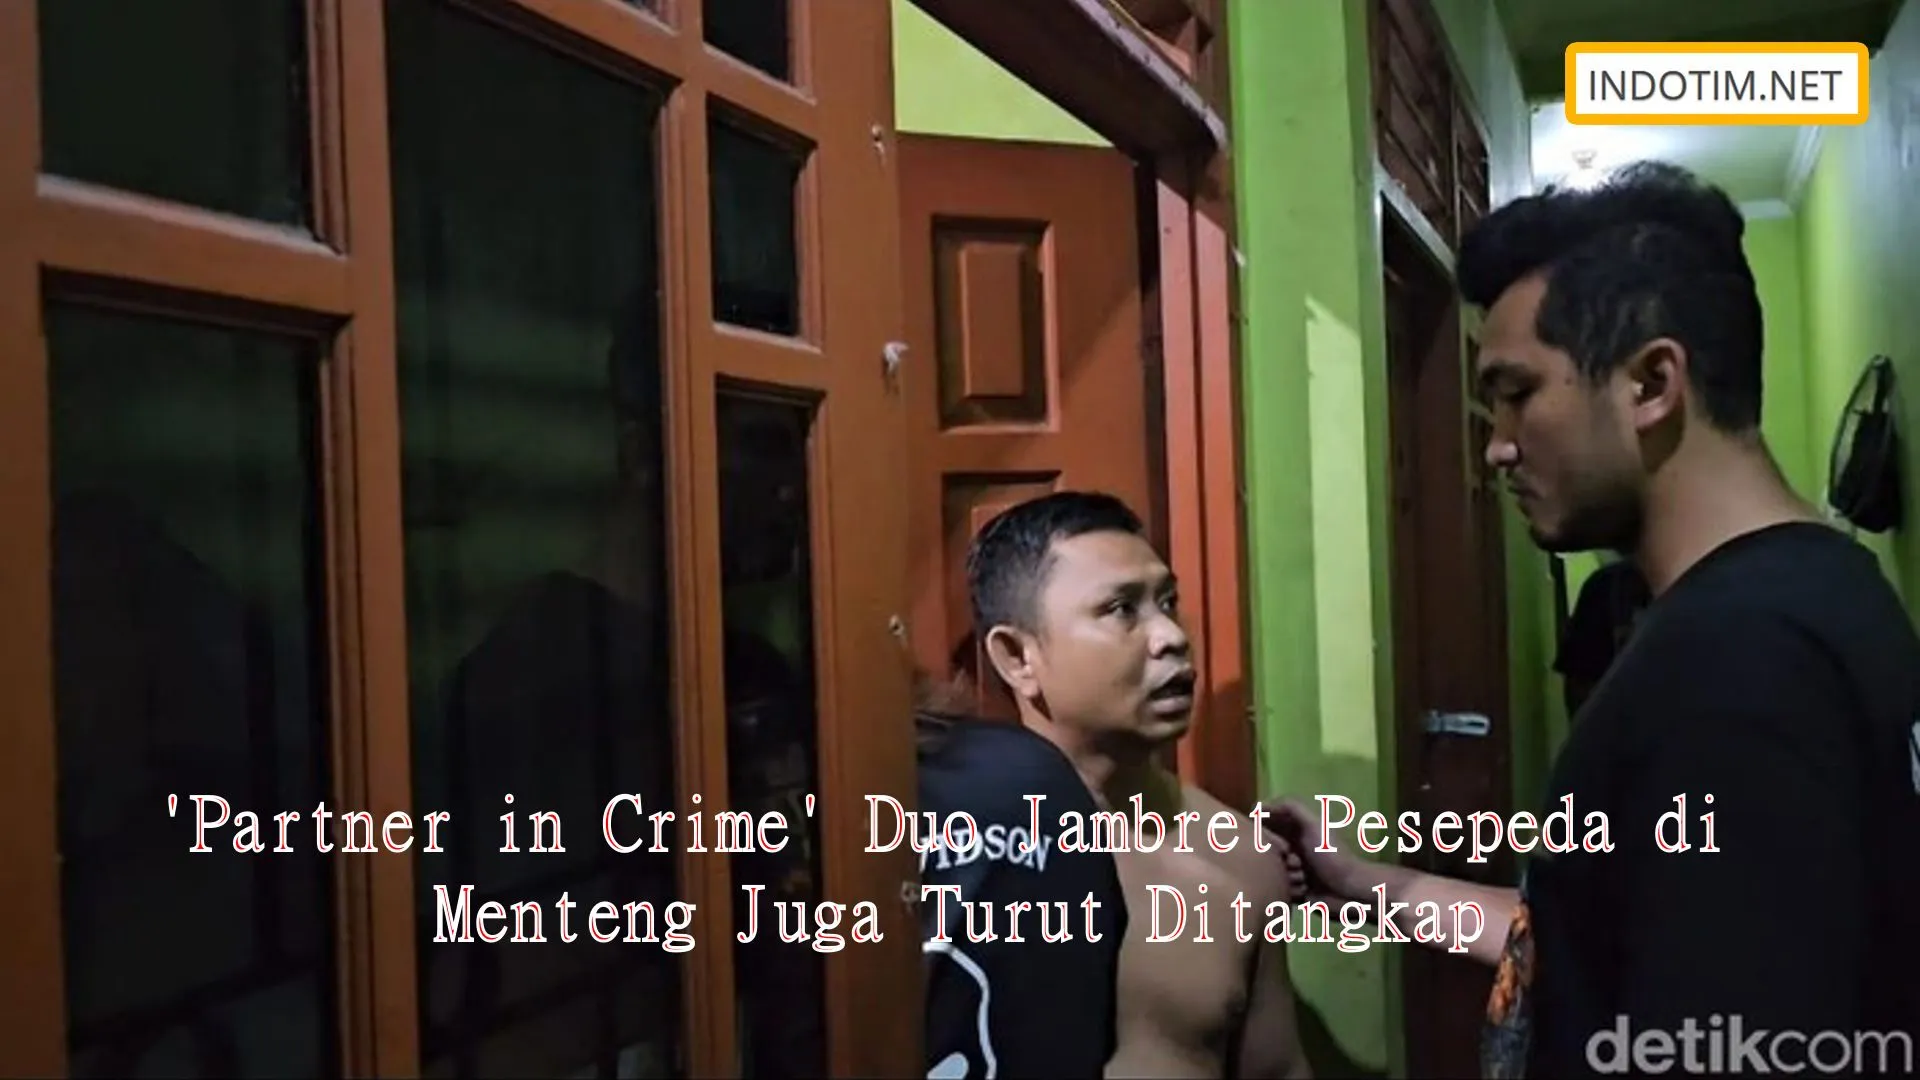 'Partner in Crime' Duo Jambret Pesepeda di Menteng Juga Turut Ditangkap